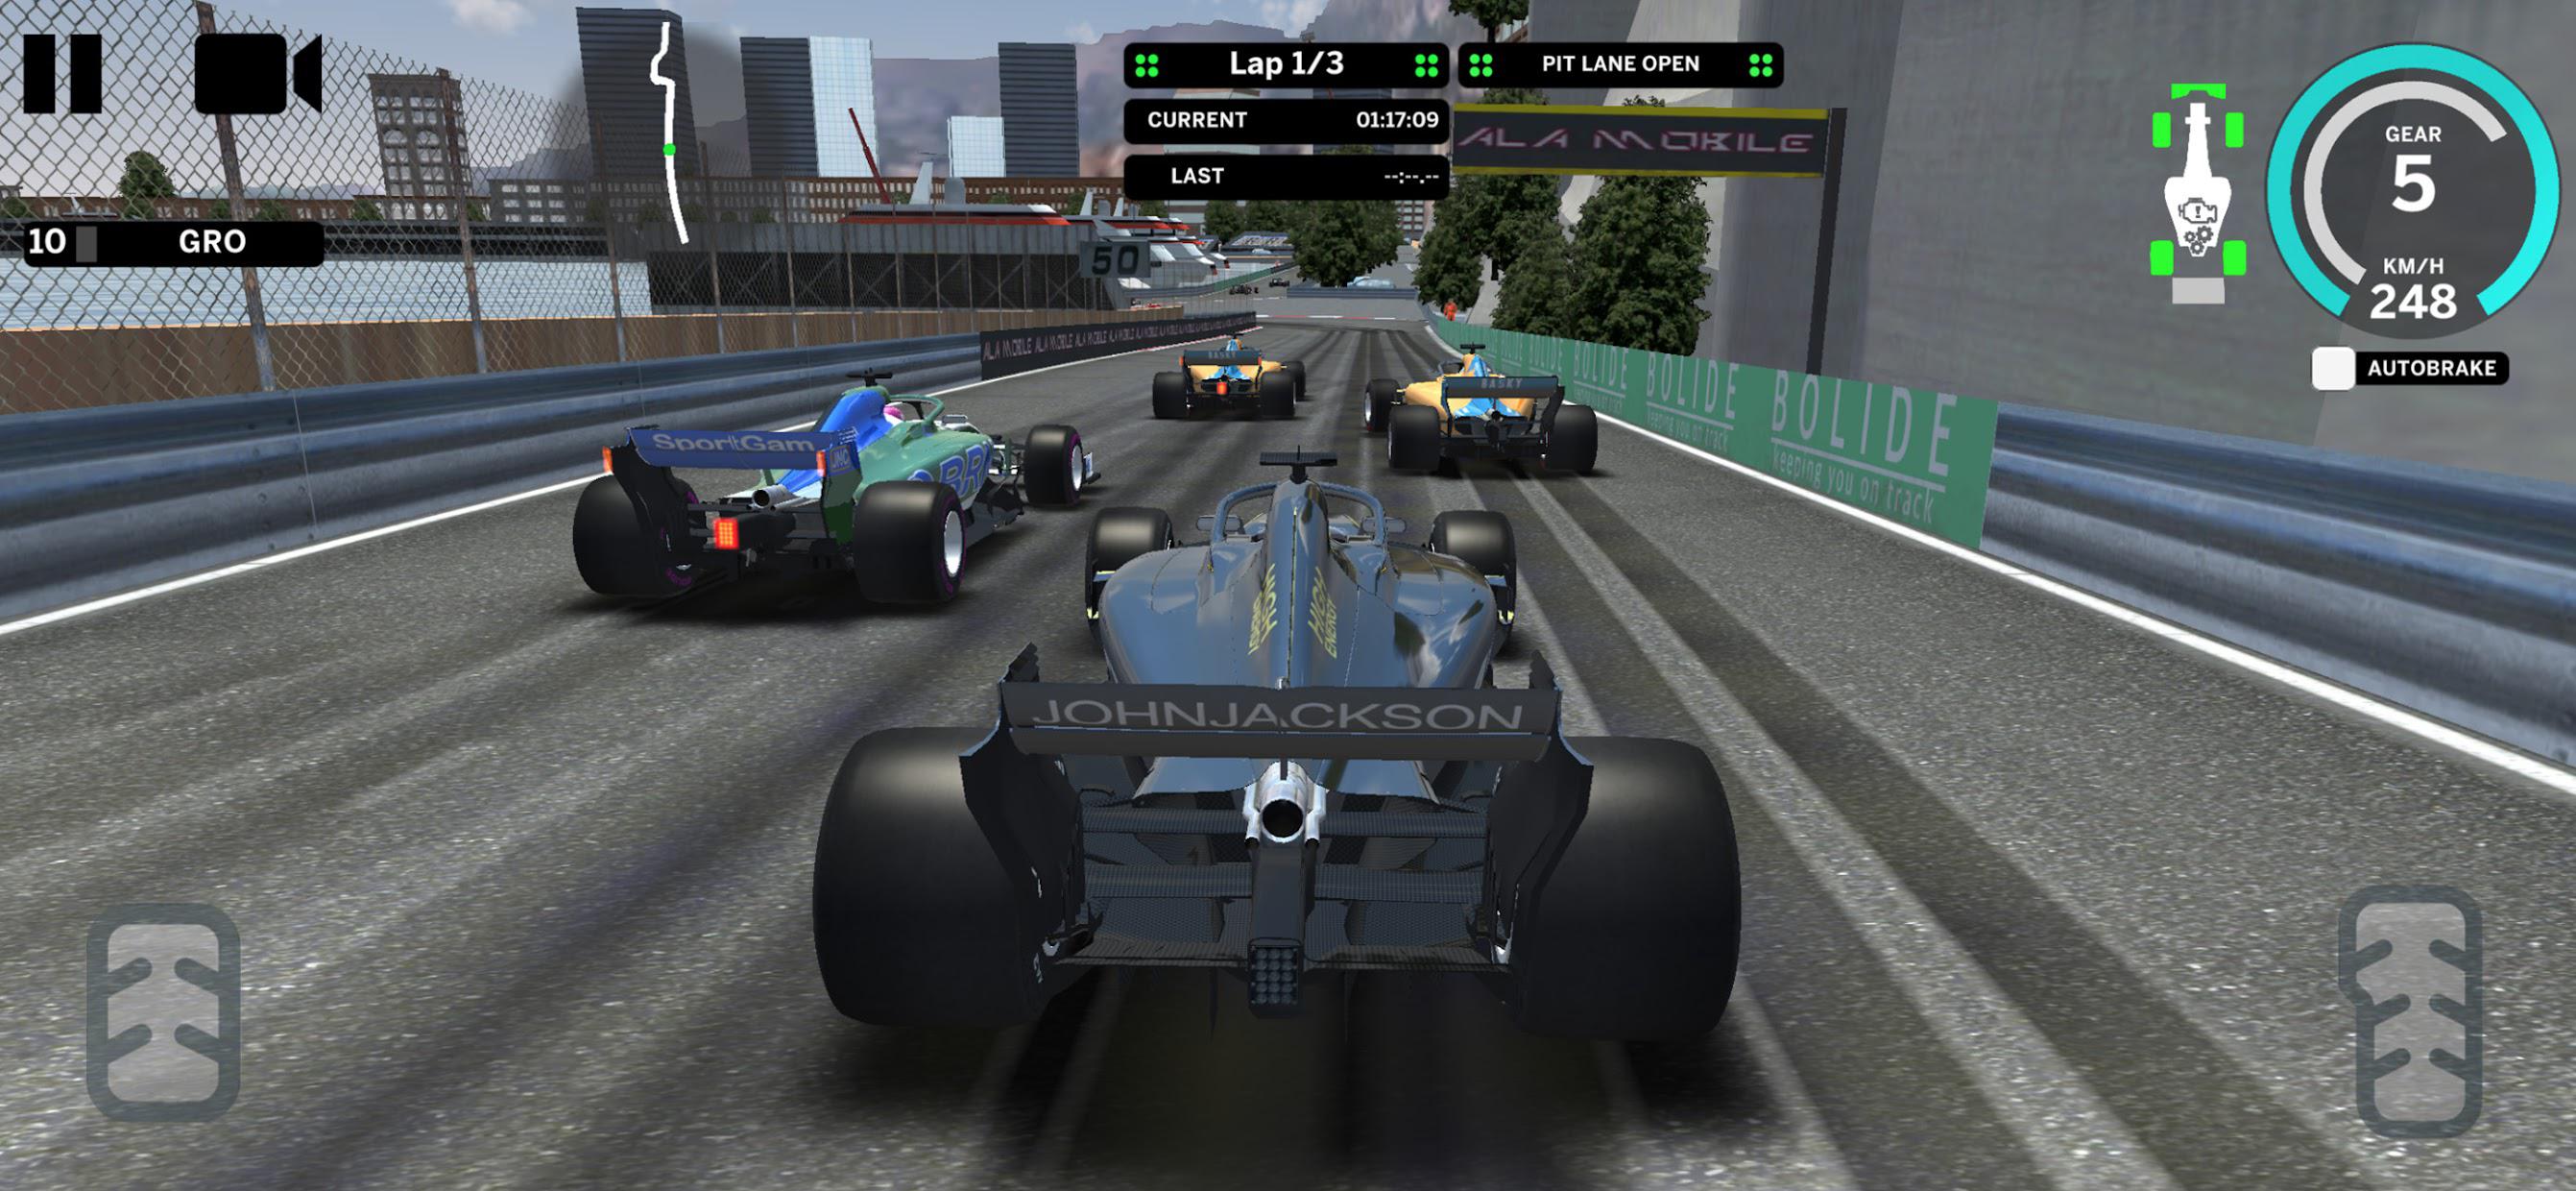 Ala Mobile GP - Formula cars racing_截图_4